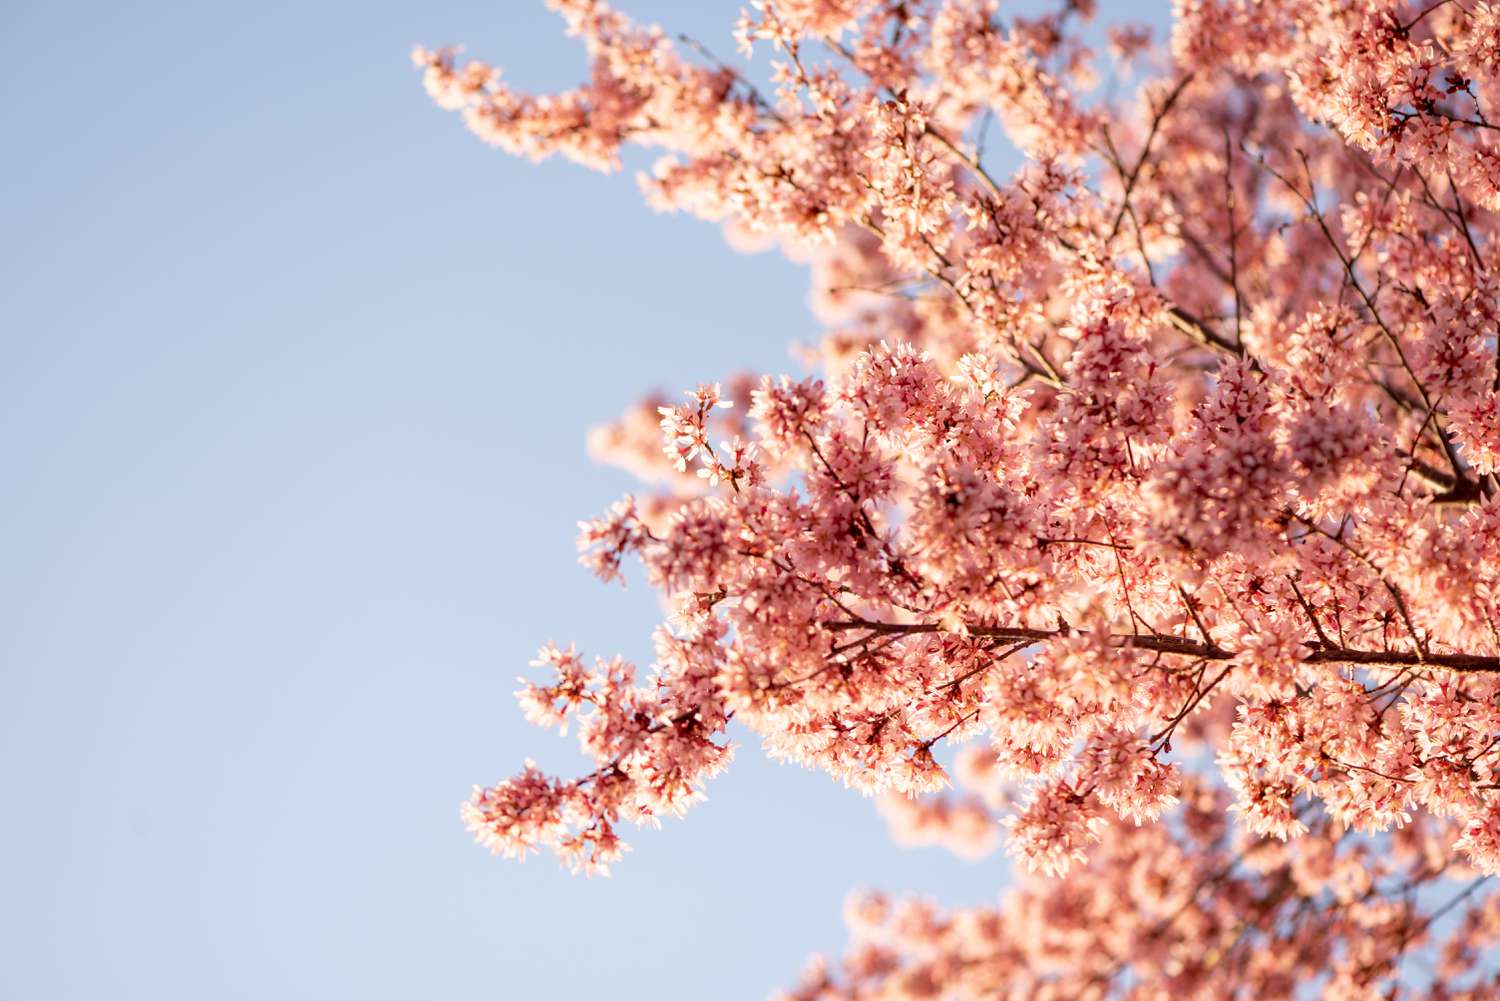 Süßkirschbaumzweige mit rosa Blüten im Sonnenlicht vor blauem Himmel